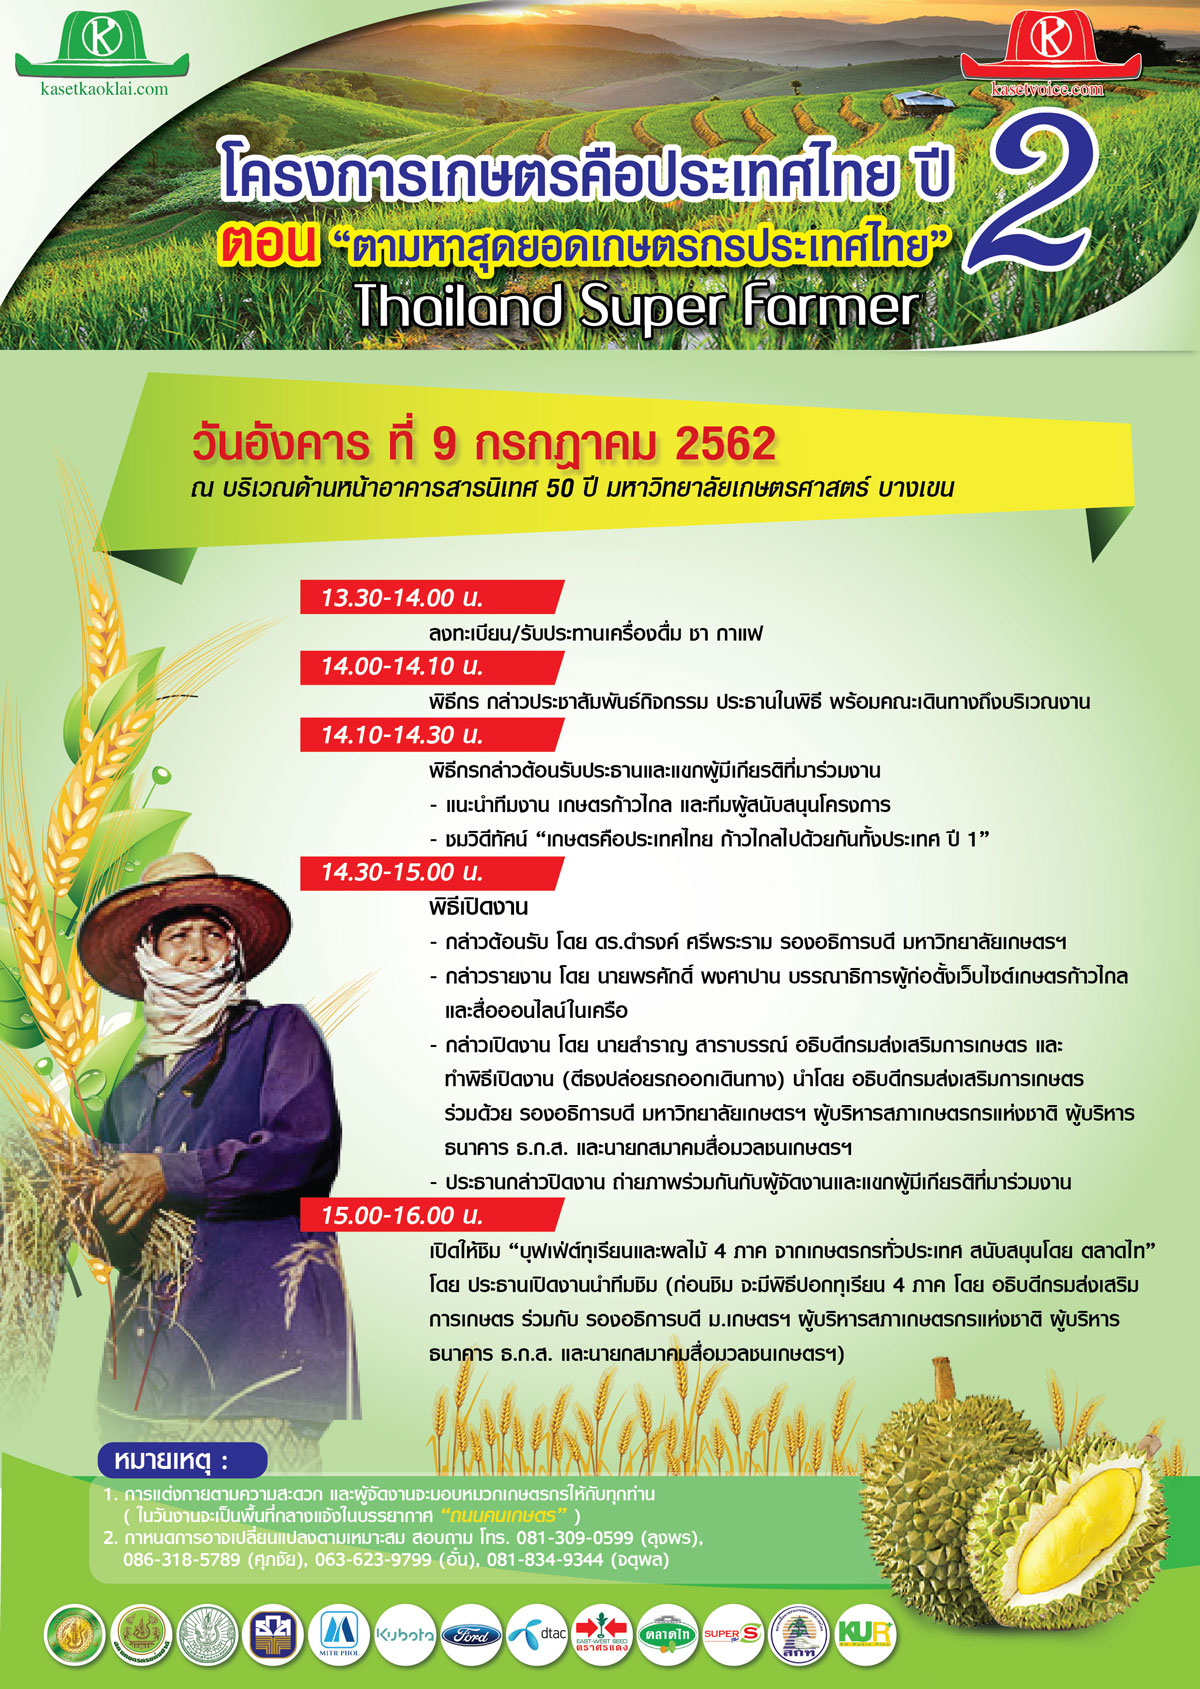 บุฟเฟ่ต์ทุเรียน 4 ภาค งานเกษตรคือประเทศไทย ปี 2